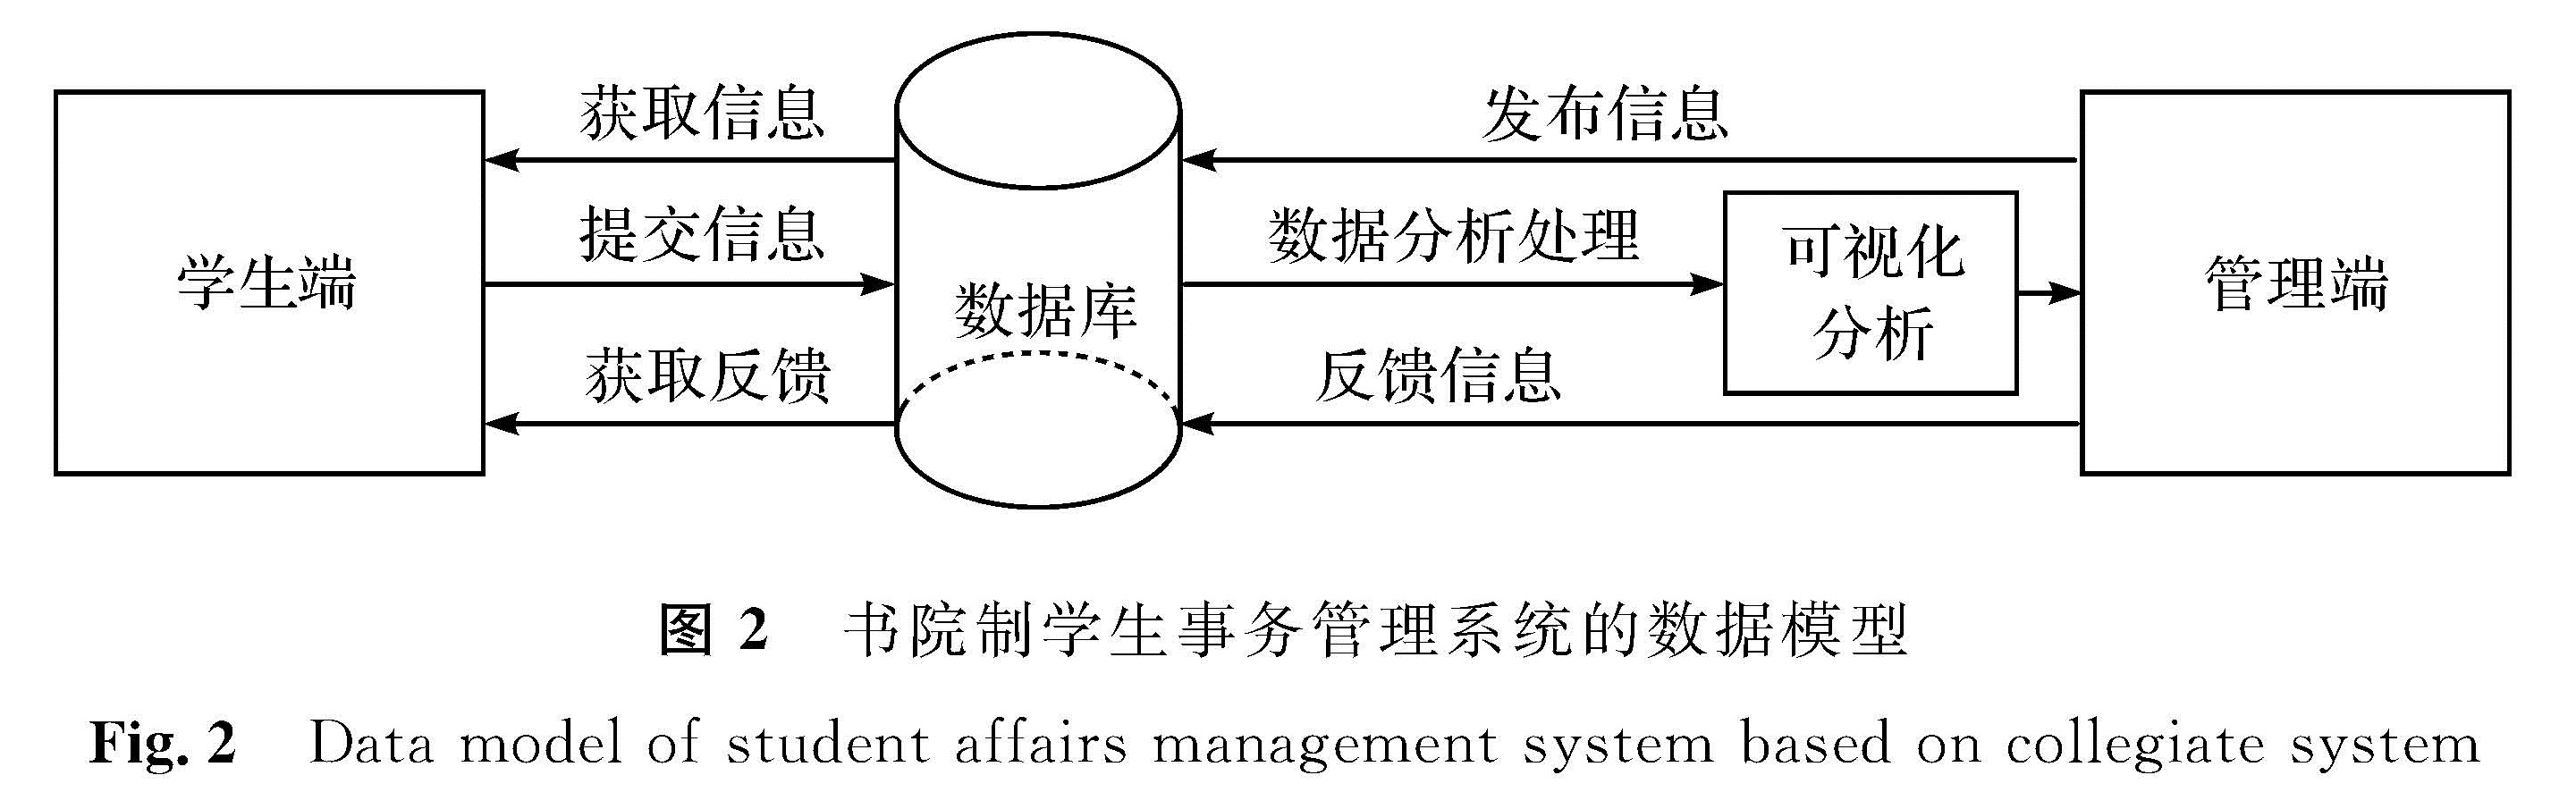 图2 书院制学生事务管理系统的数据模型<br/>Fig.2 Data model of student affairs management system based on collegiate system